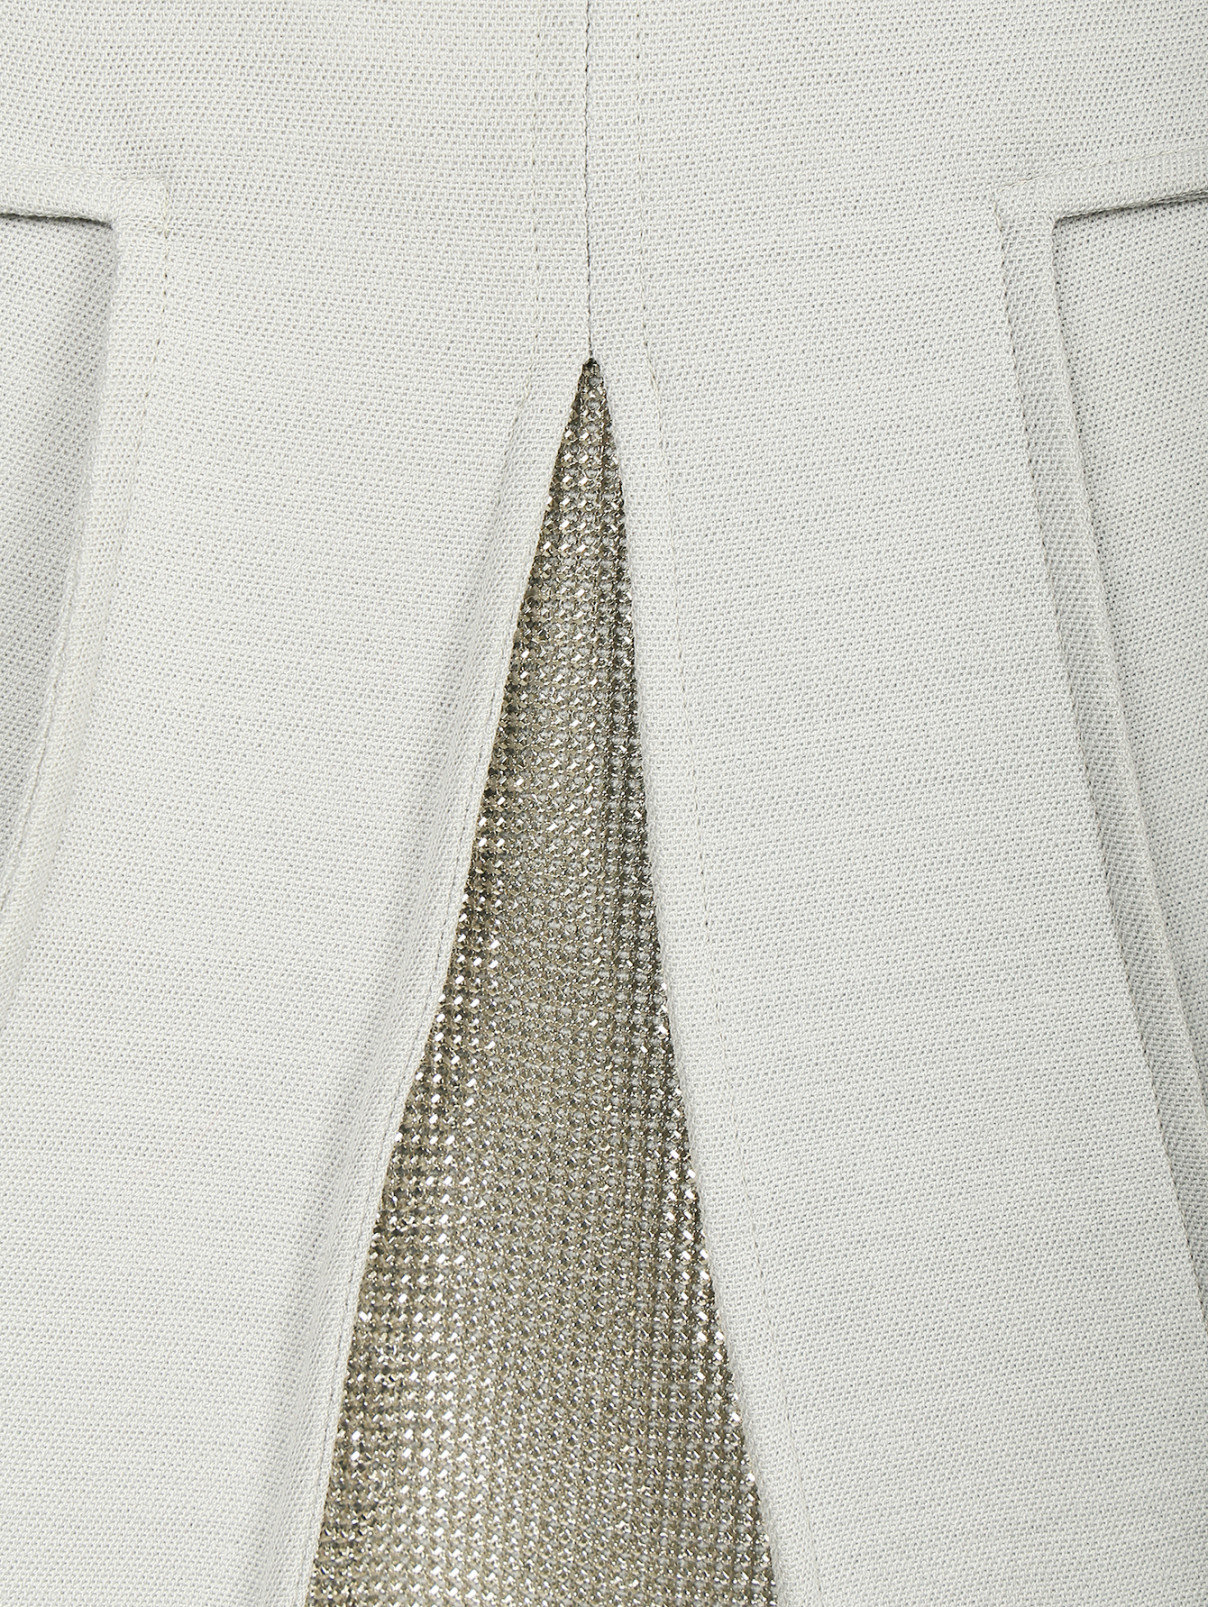 Юбка-мини с металлической вставкой Versace 1969  –  Деталь  – Цвет:  Серый